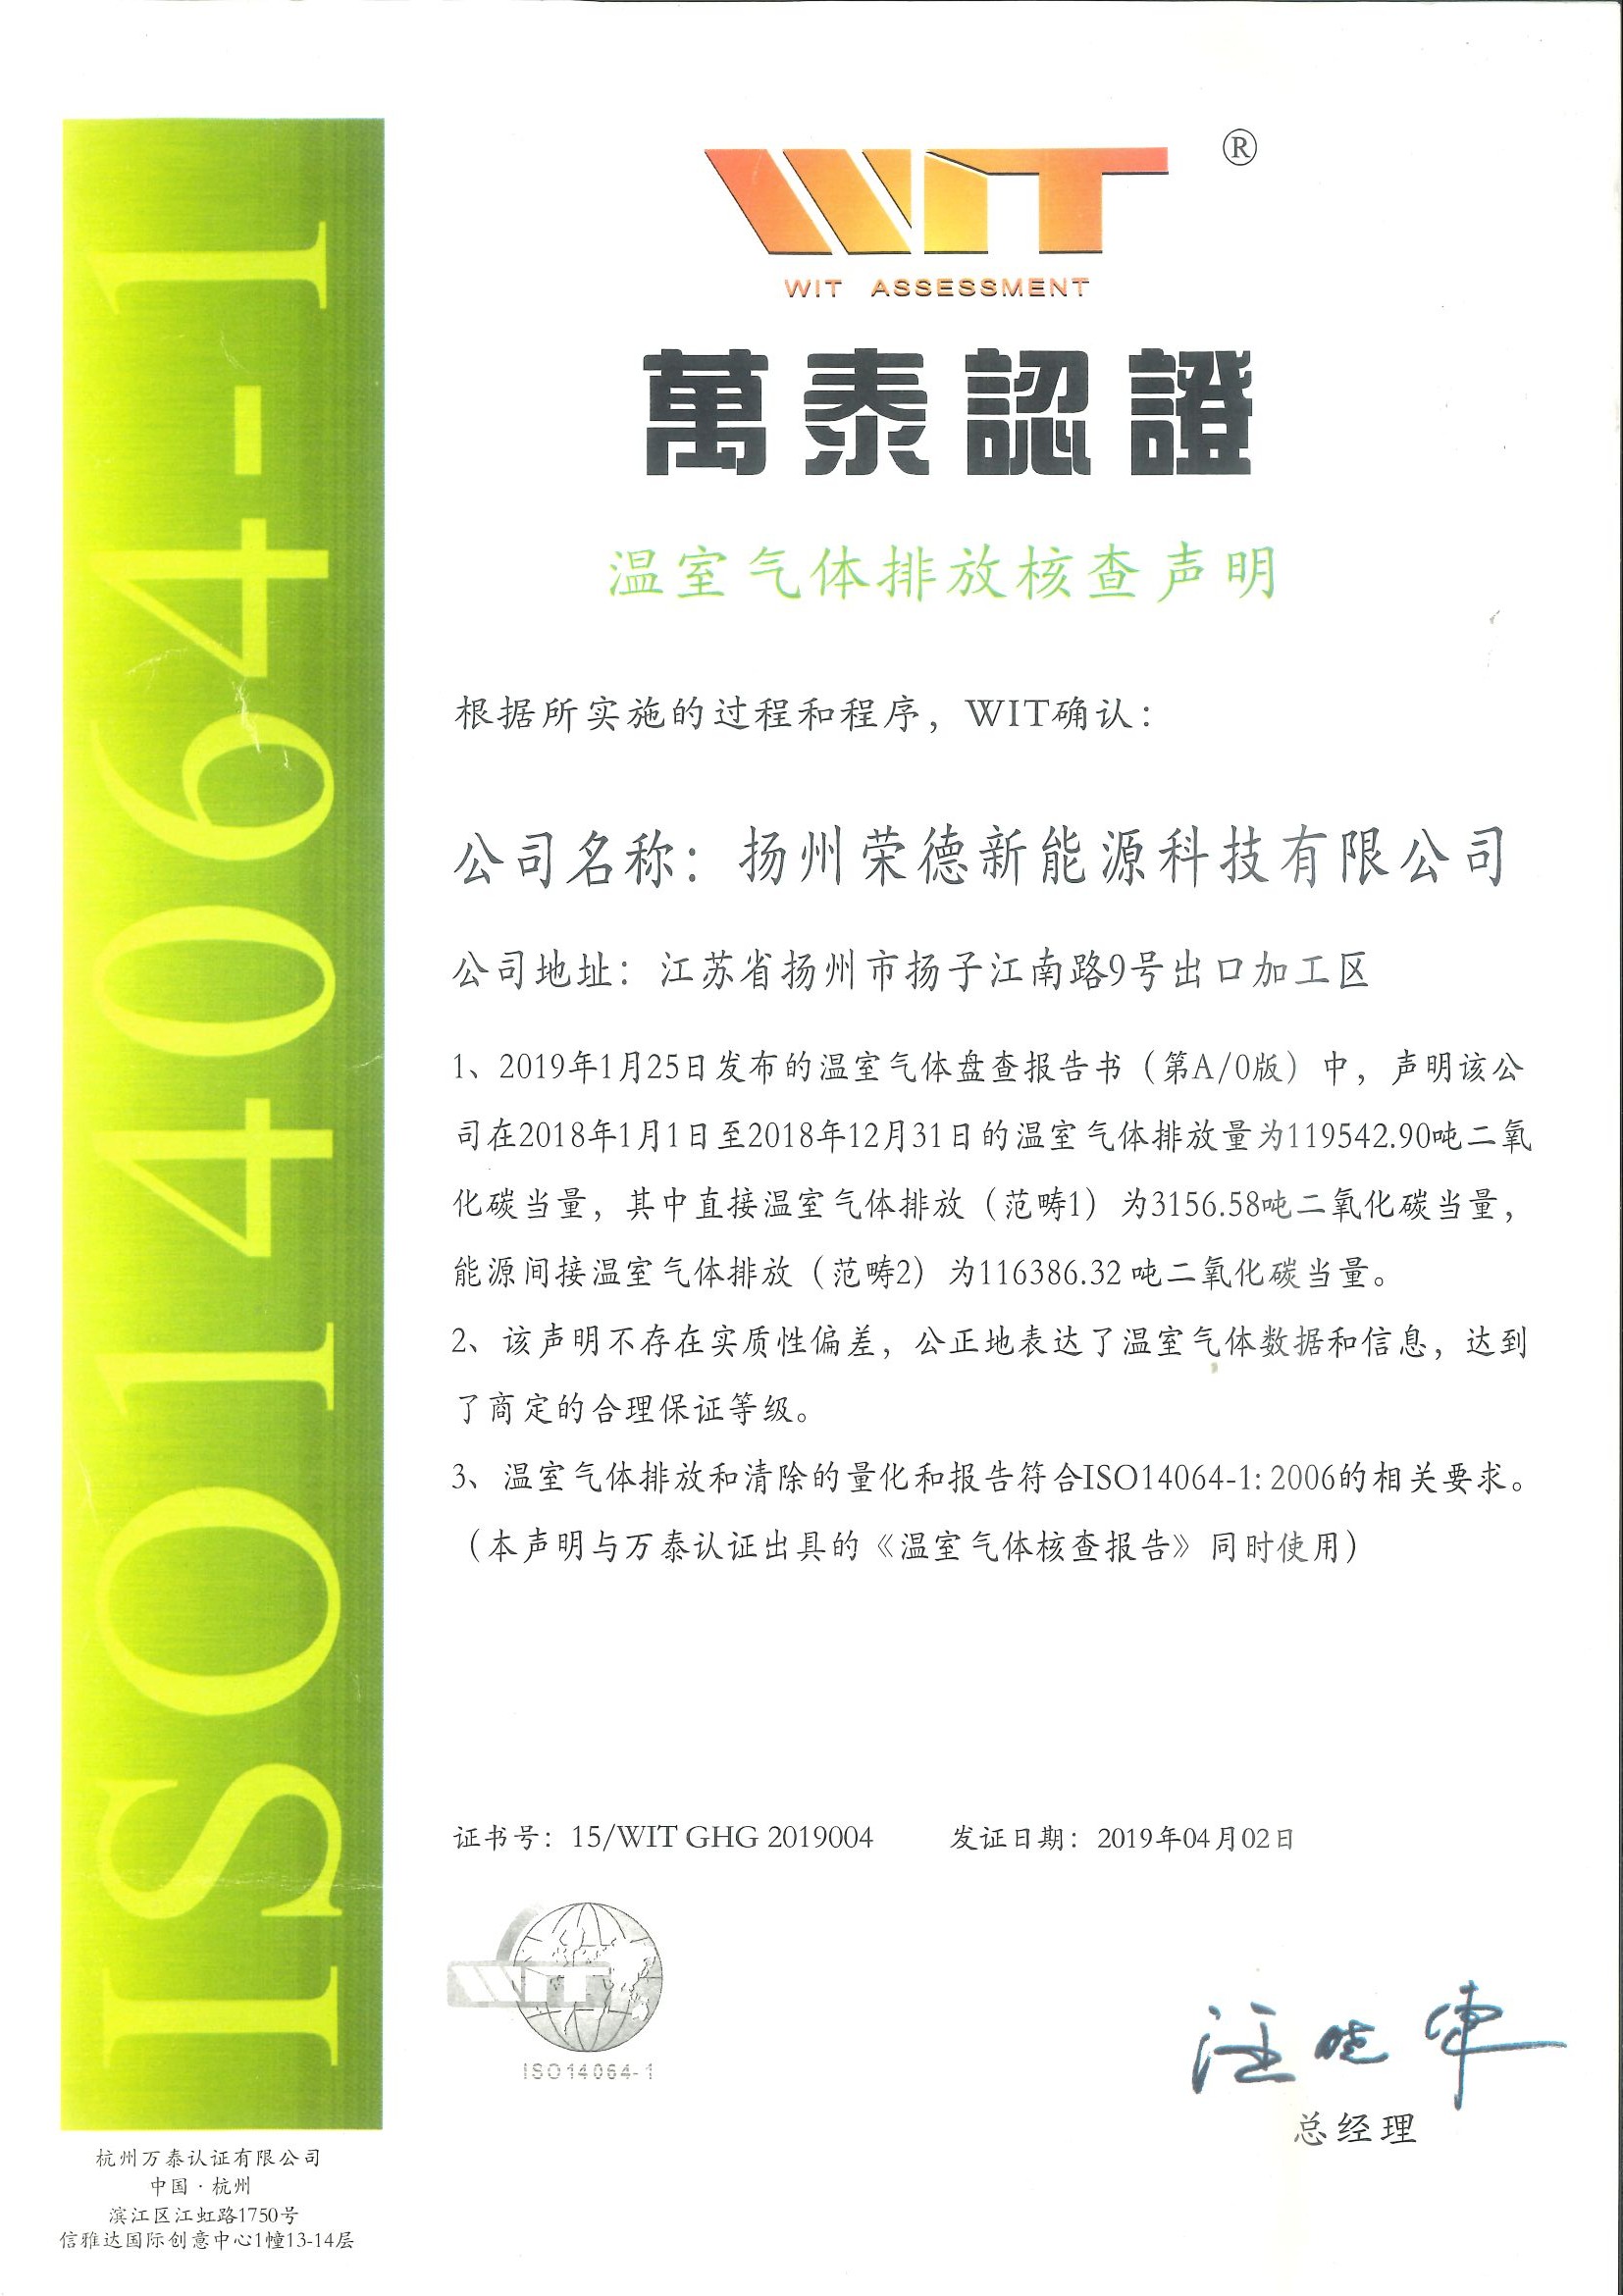 扬州贝博体育网14064温室气体排放证书